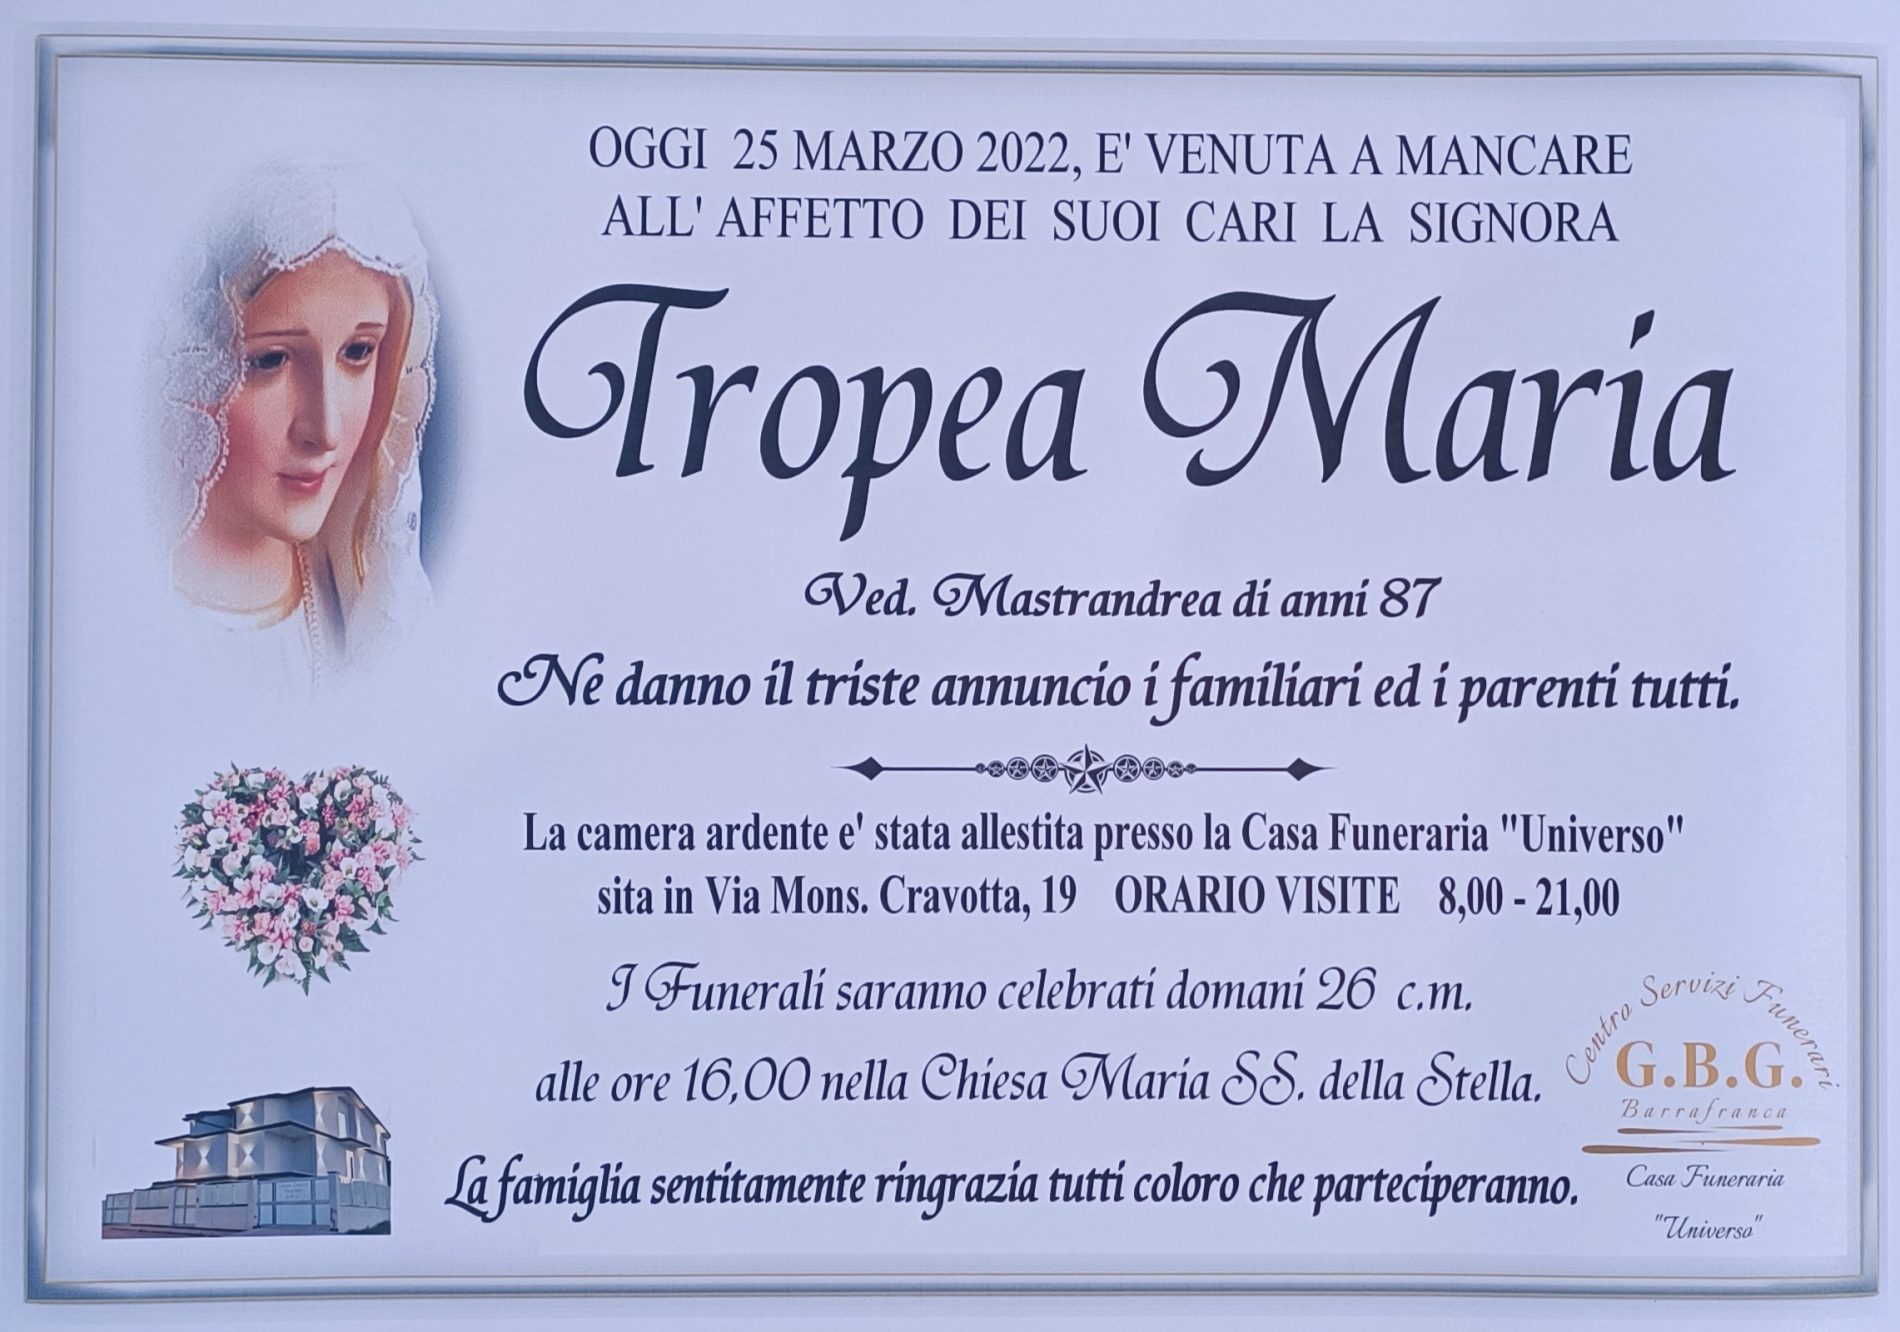 Annuncio servizi funerari agenzia G.B.G. signora Tropea Maria ved. Mastrandrea di anni 87